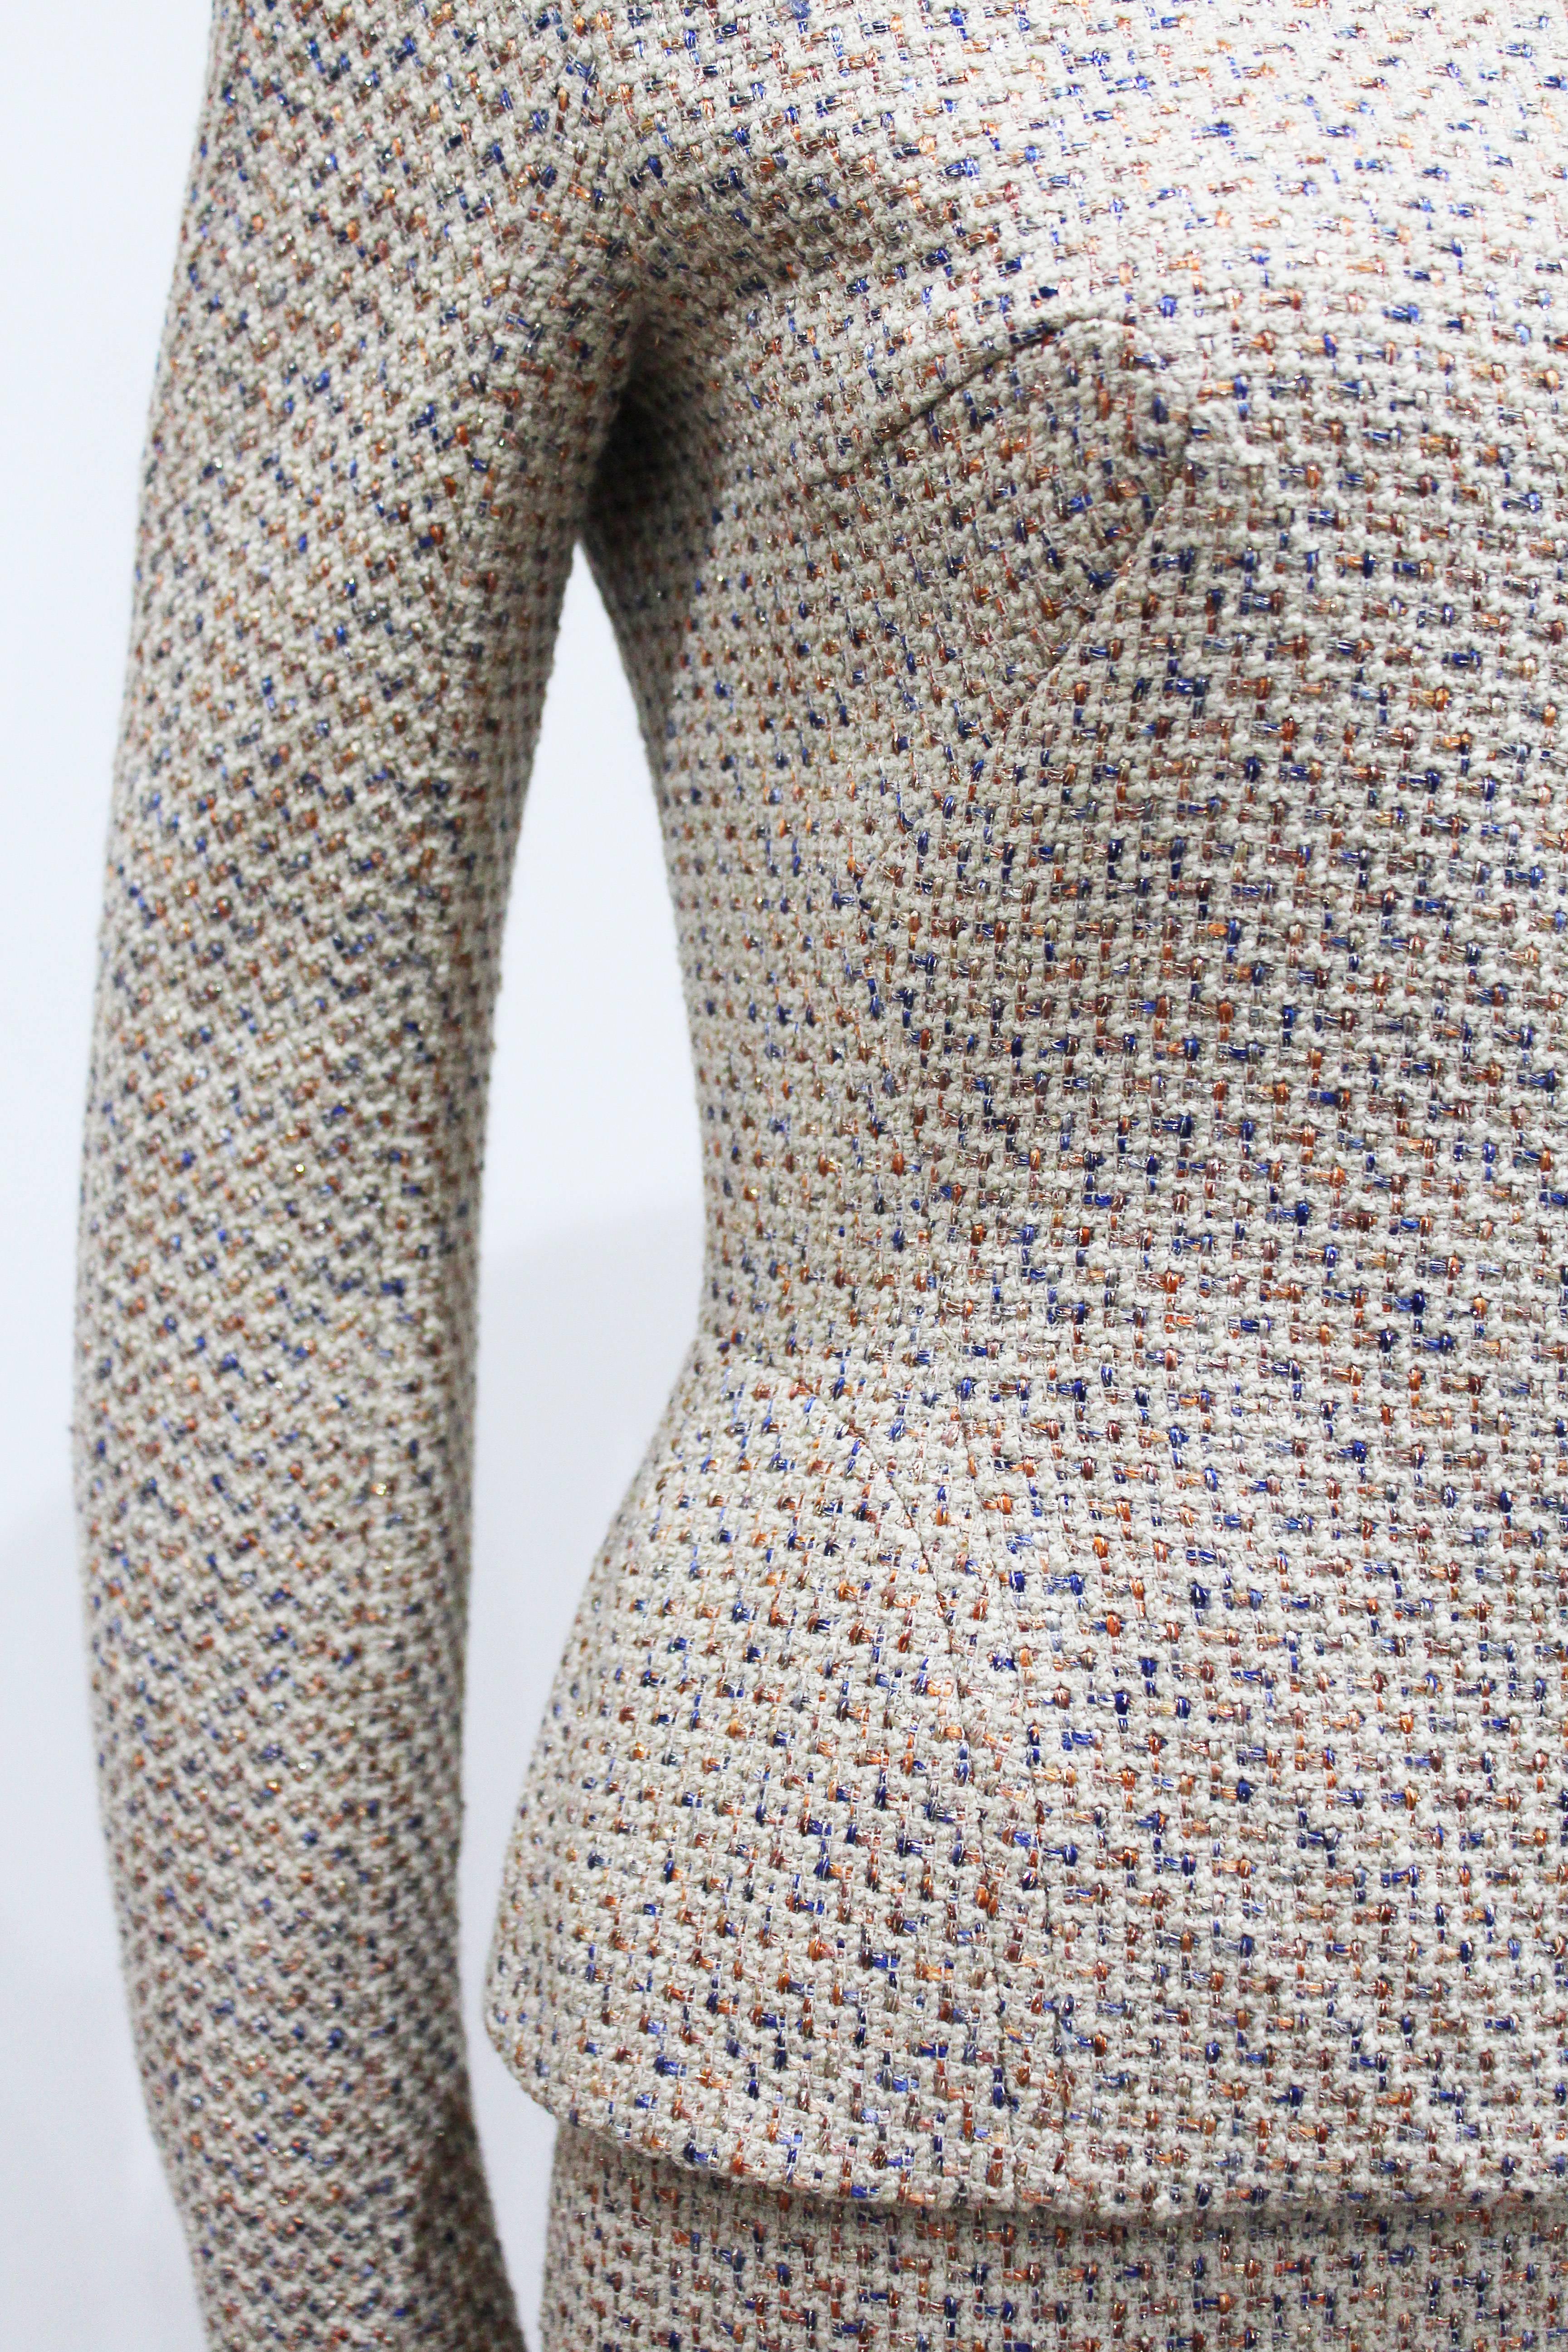 Brown Alexander McQueen Metallic Tweed Skirt Suit, Fall 2004